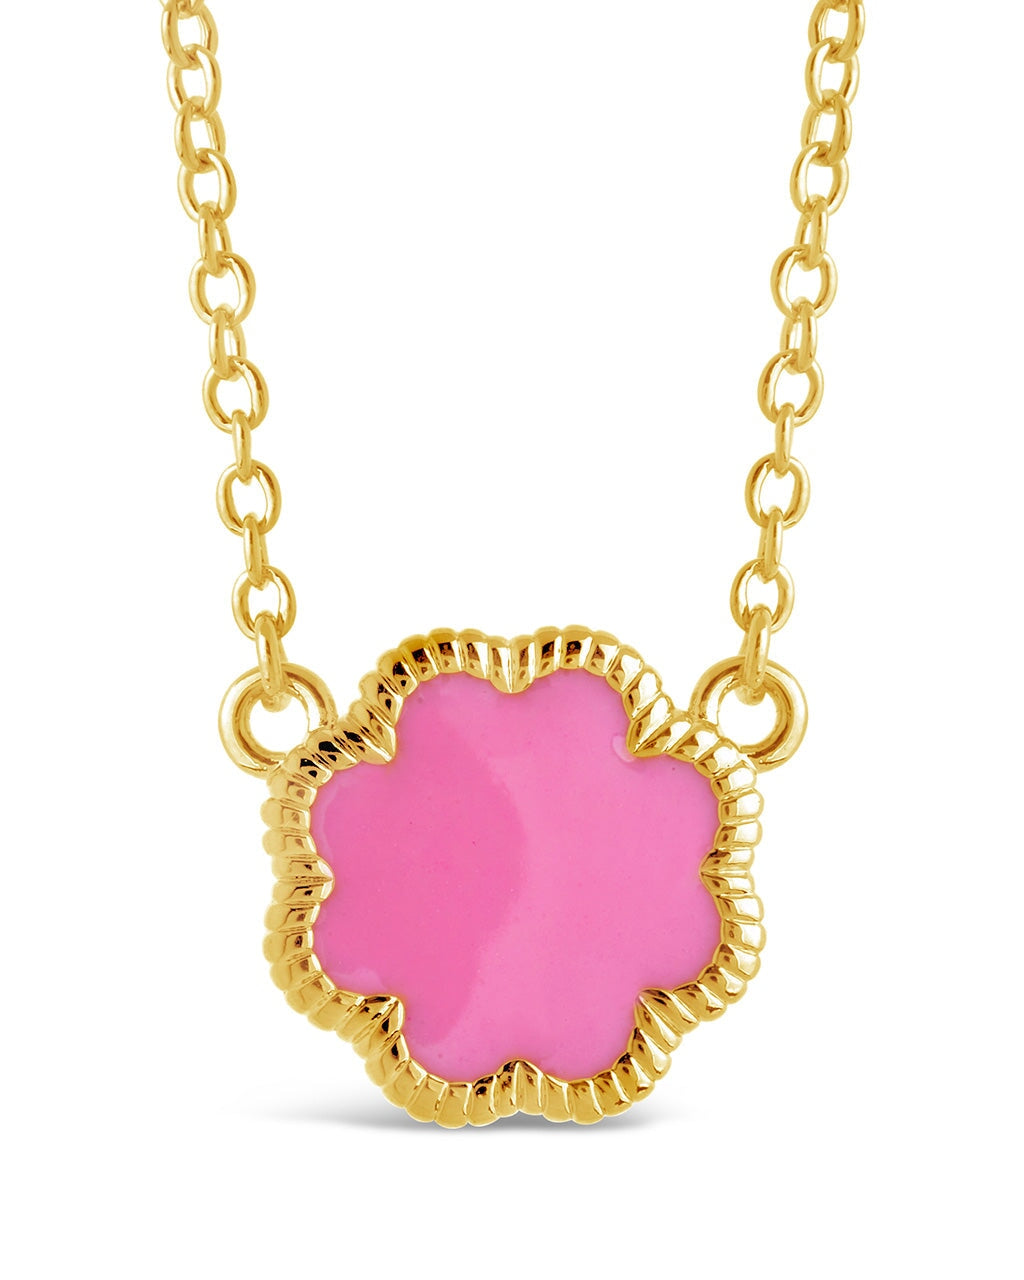 Rose Petal Pendant Necklace Necklace Sterling Forever Gold Pink Enamel 